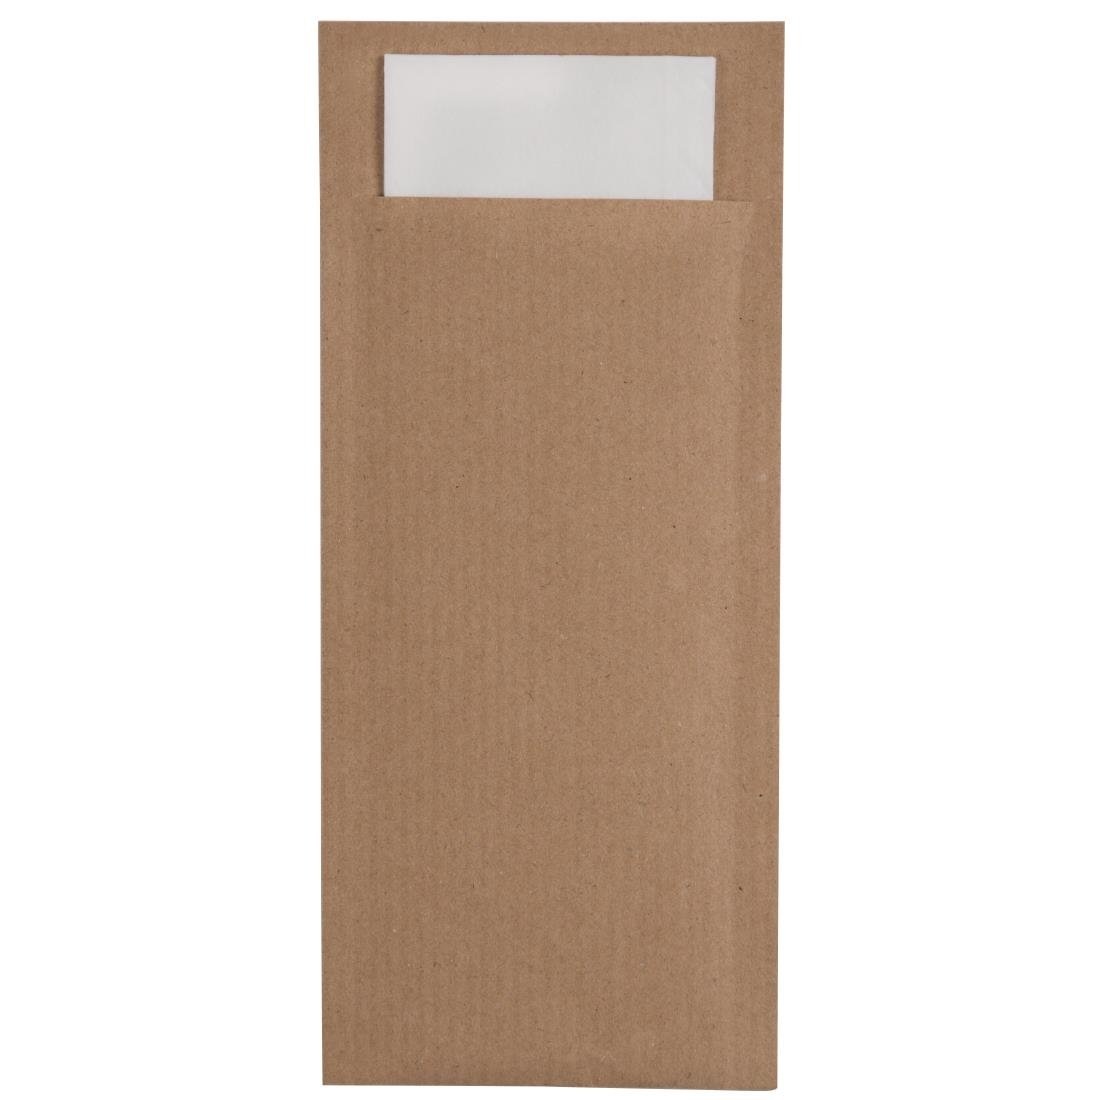 Papier-Bestecktaschen Braun | Serviette Weiß | 57,5x195mm | 600 Stück